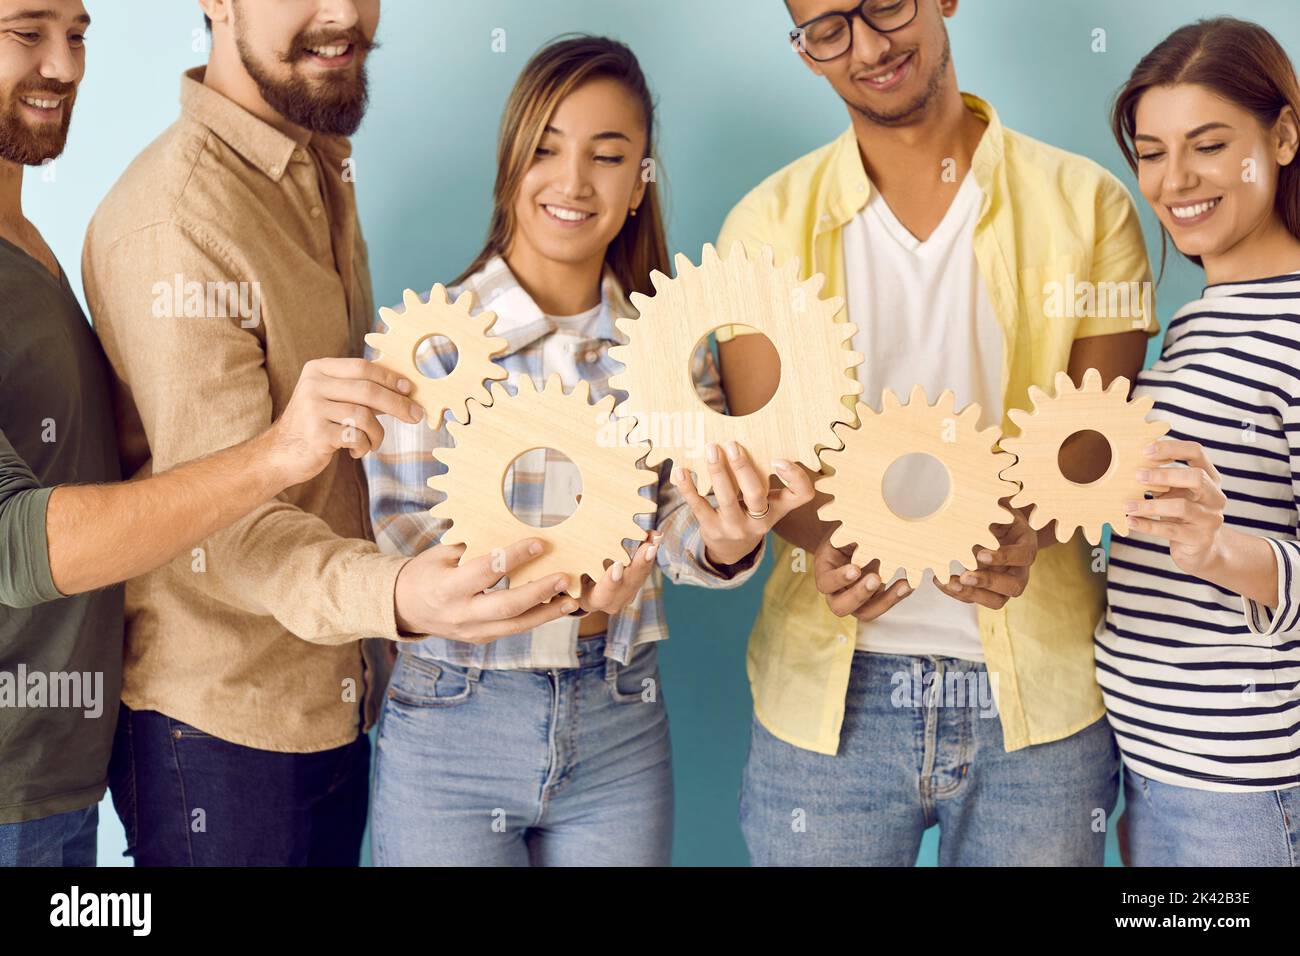 Une équipe multiraciale de jeunes heureux qui relient les roues dentées comme symbole du travail d'équipe Banque D'Images